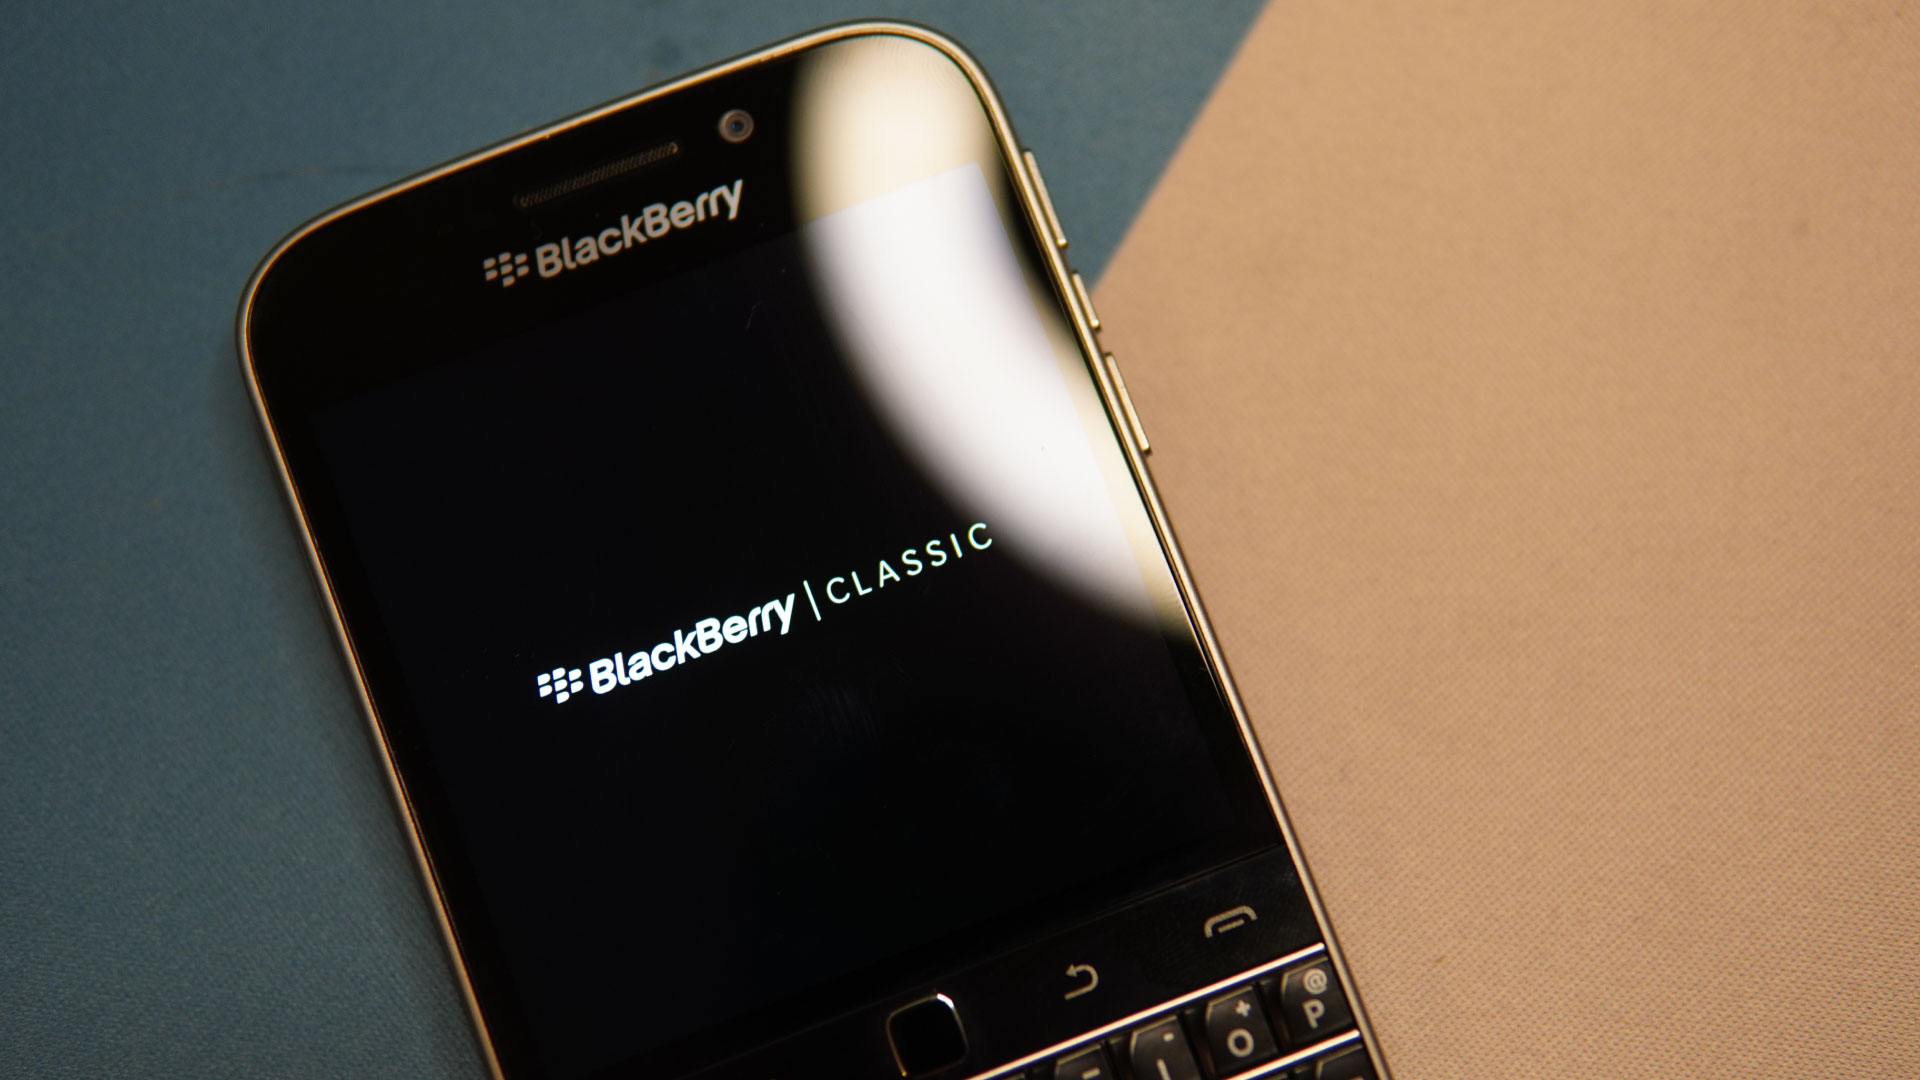 Blackberry: Llegará a las salas de cine la historia de esta marca que dominó el mercado de telefonía movil y smarthpones